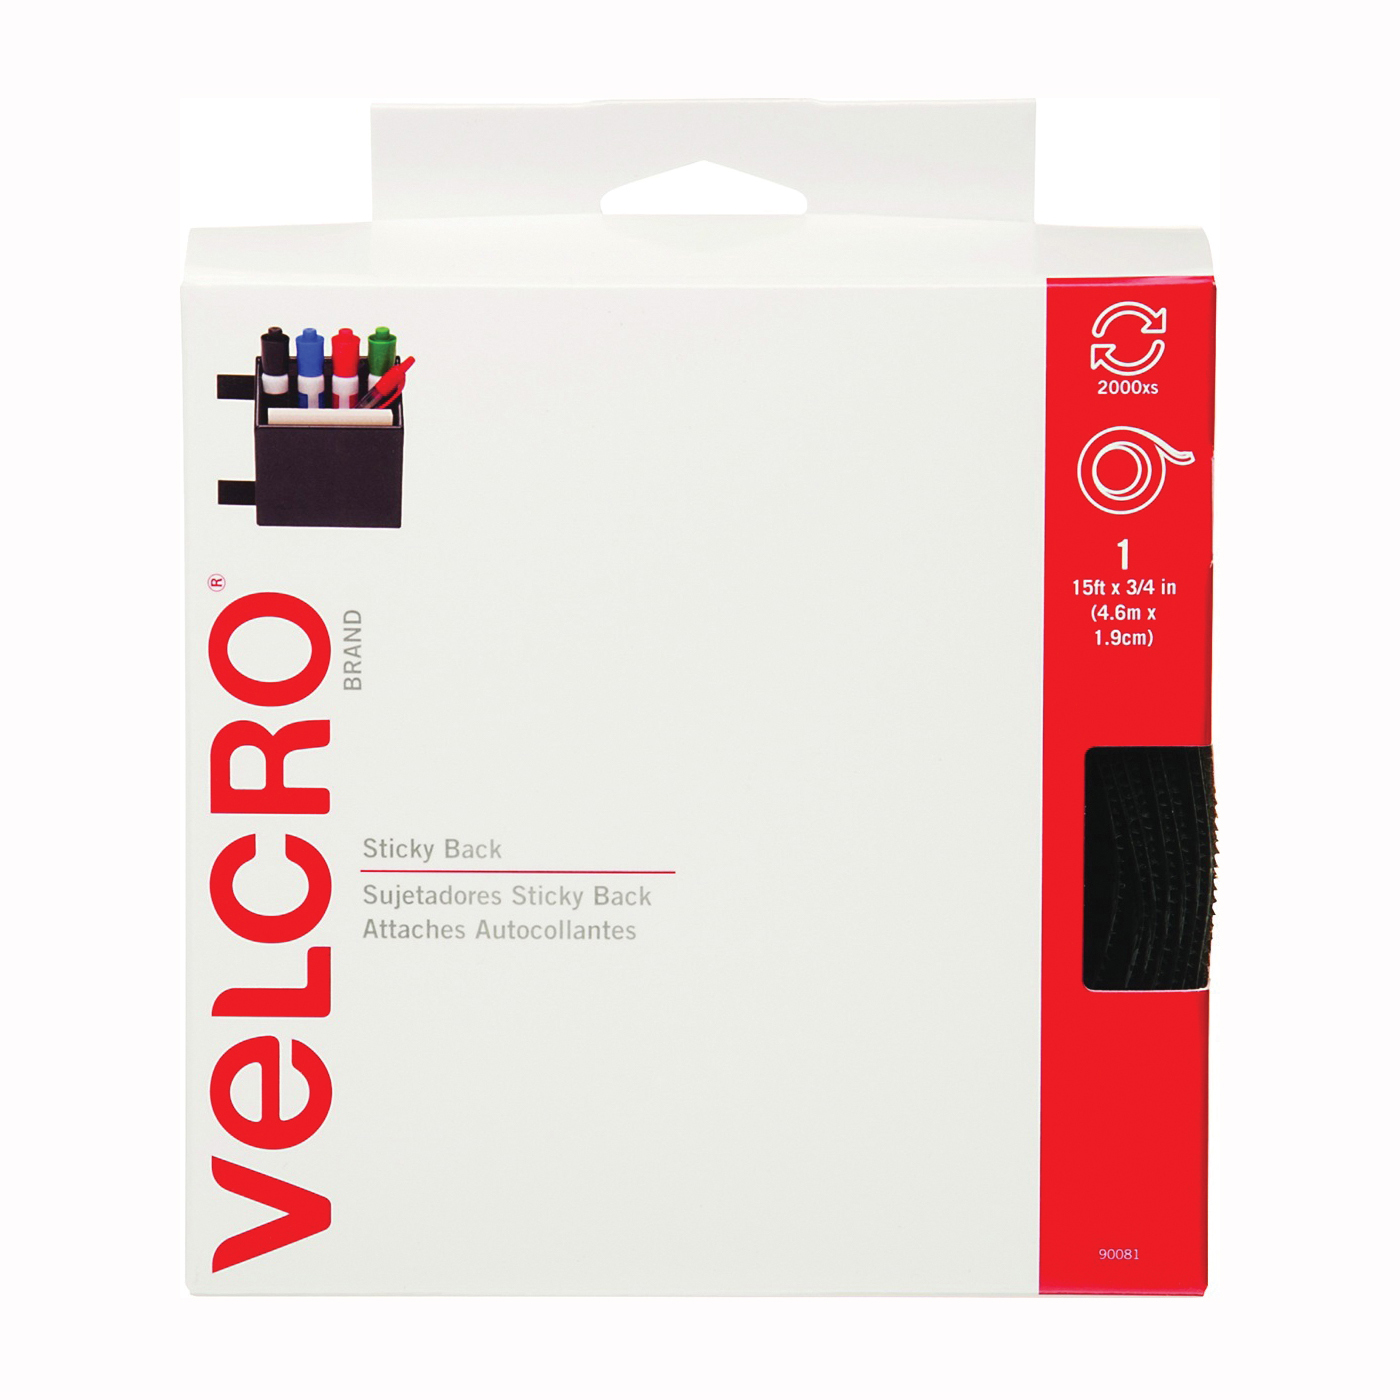 VELCRO Brand 90081